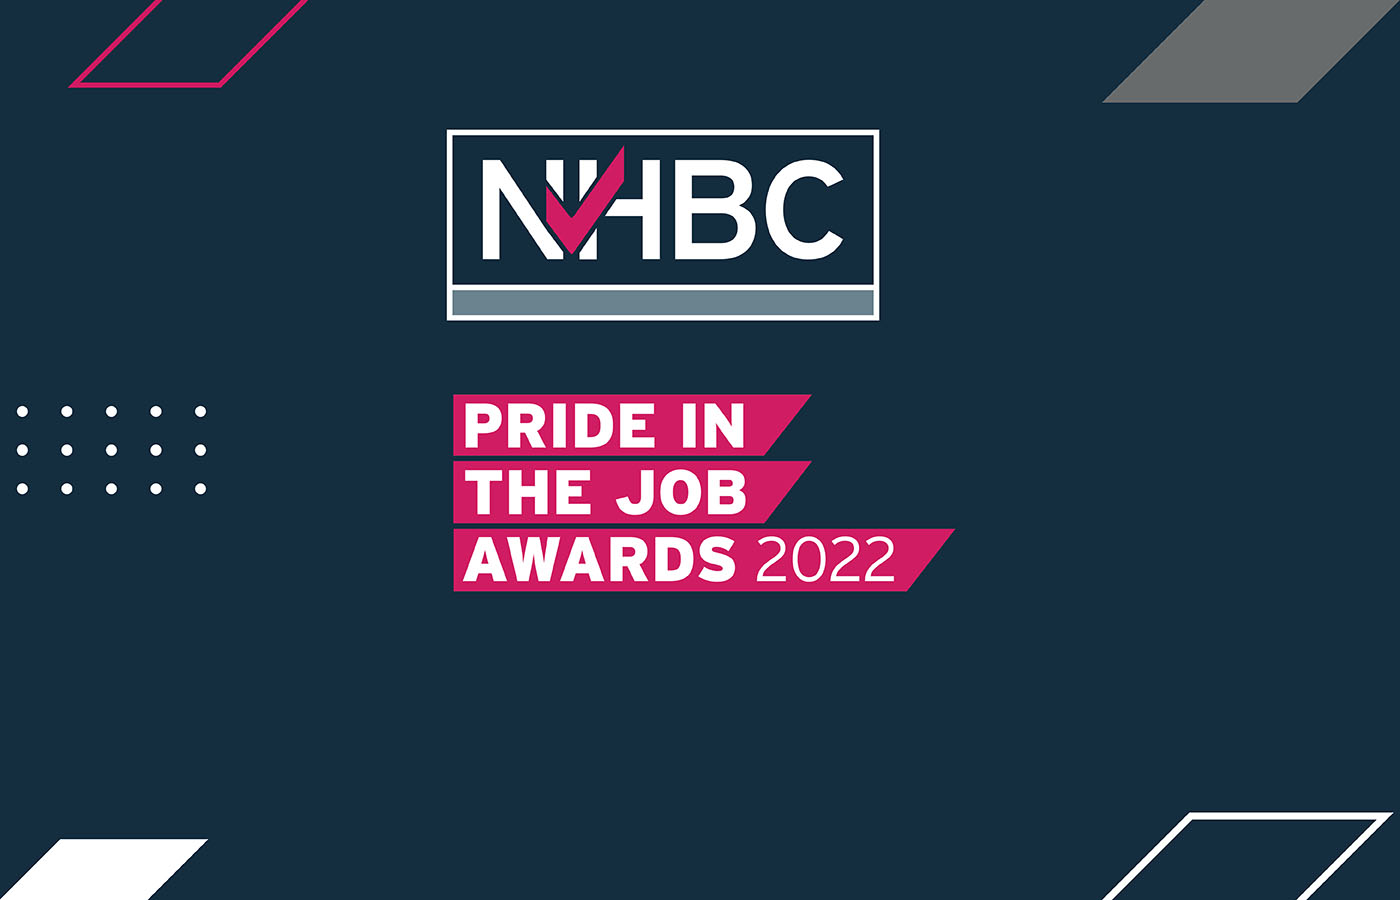 NHBC Pride in the Job Awards 2022